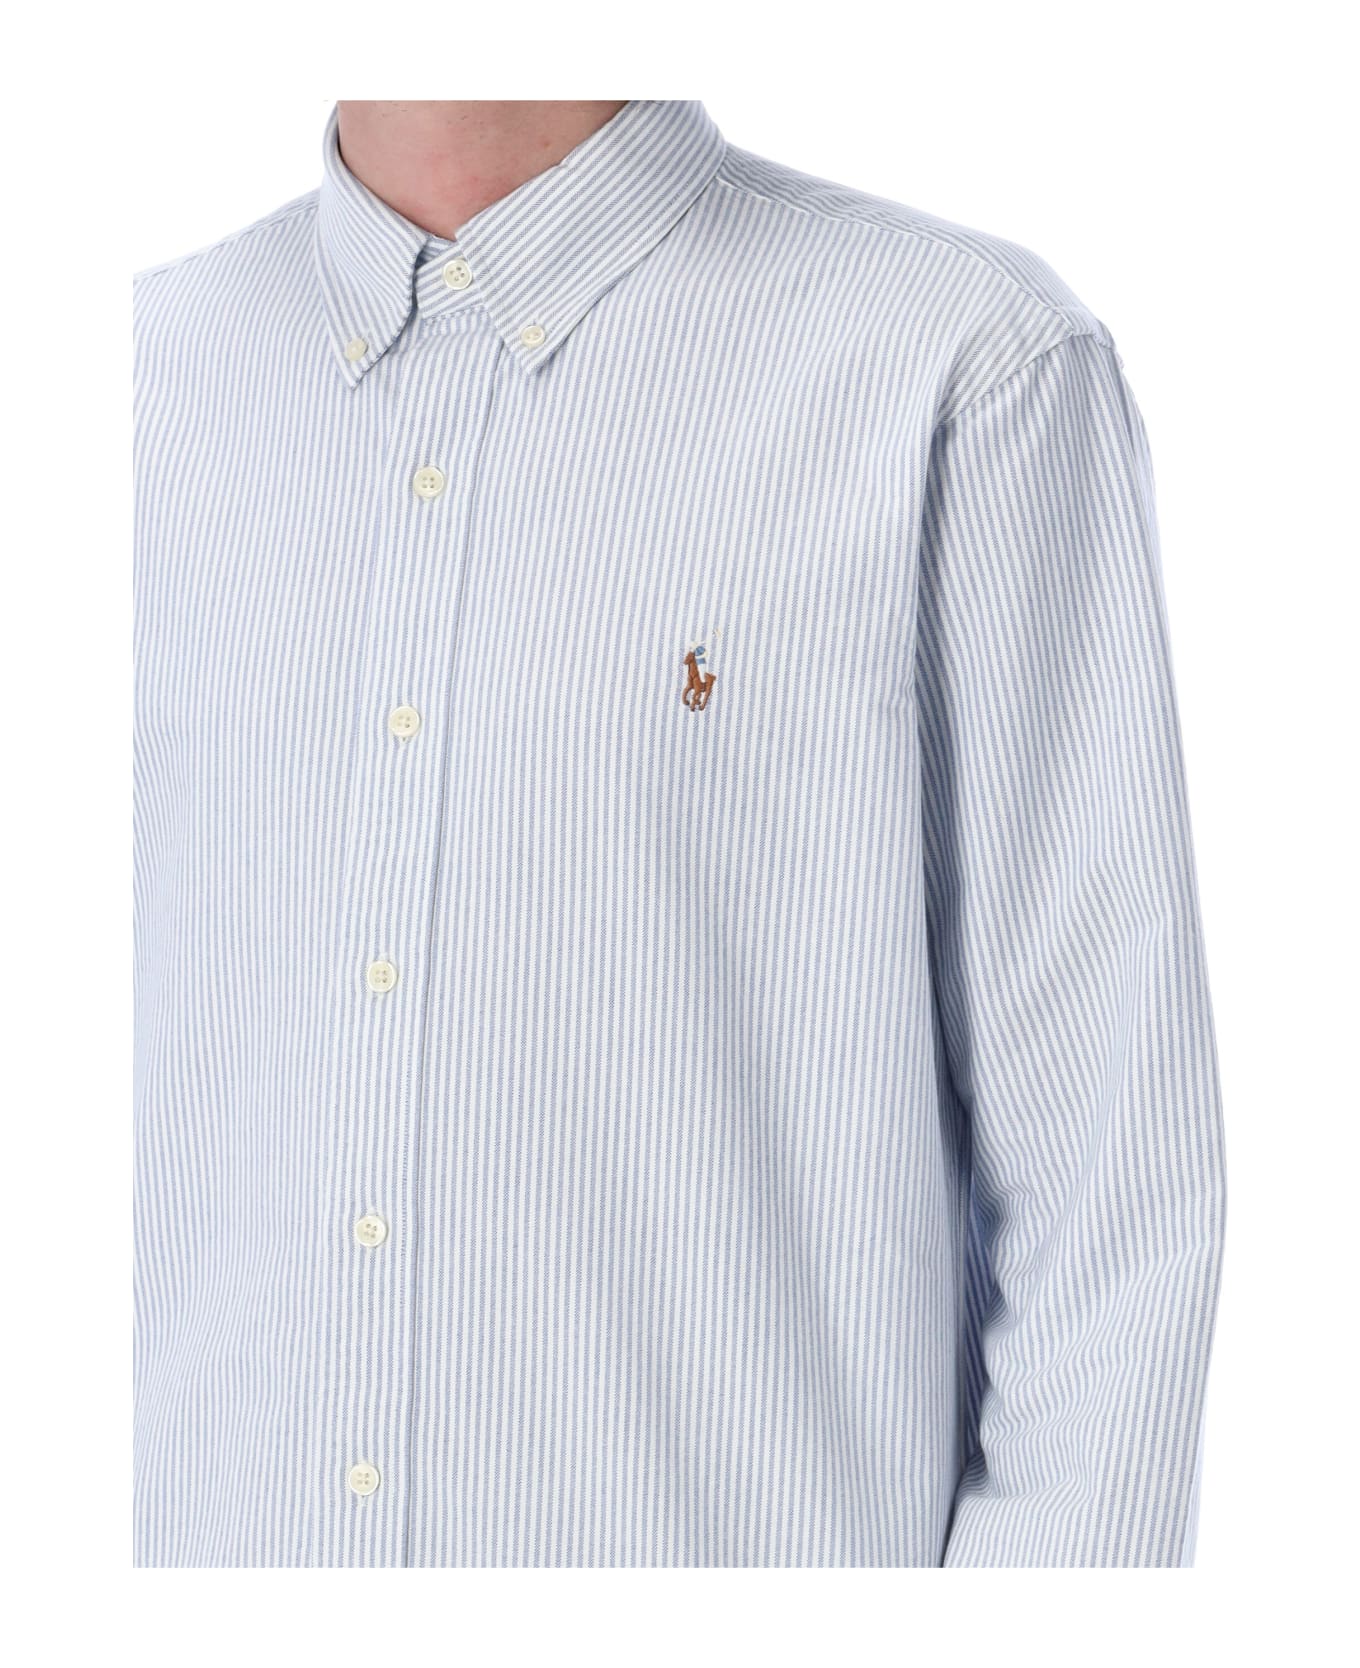 Polo Ralph Lauren Custom Fit Shirt - LIGHT BLUE STRIPES